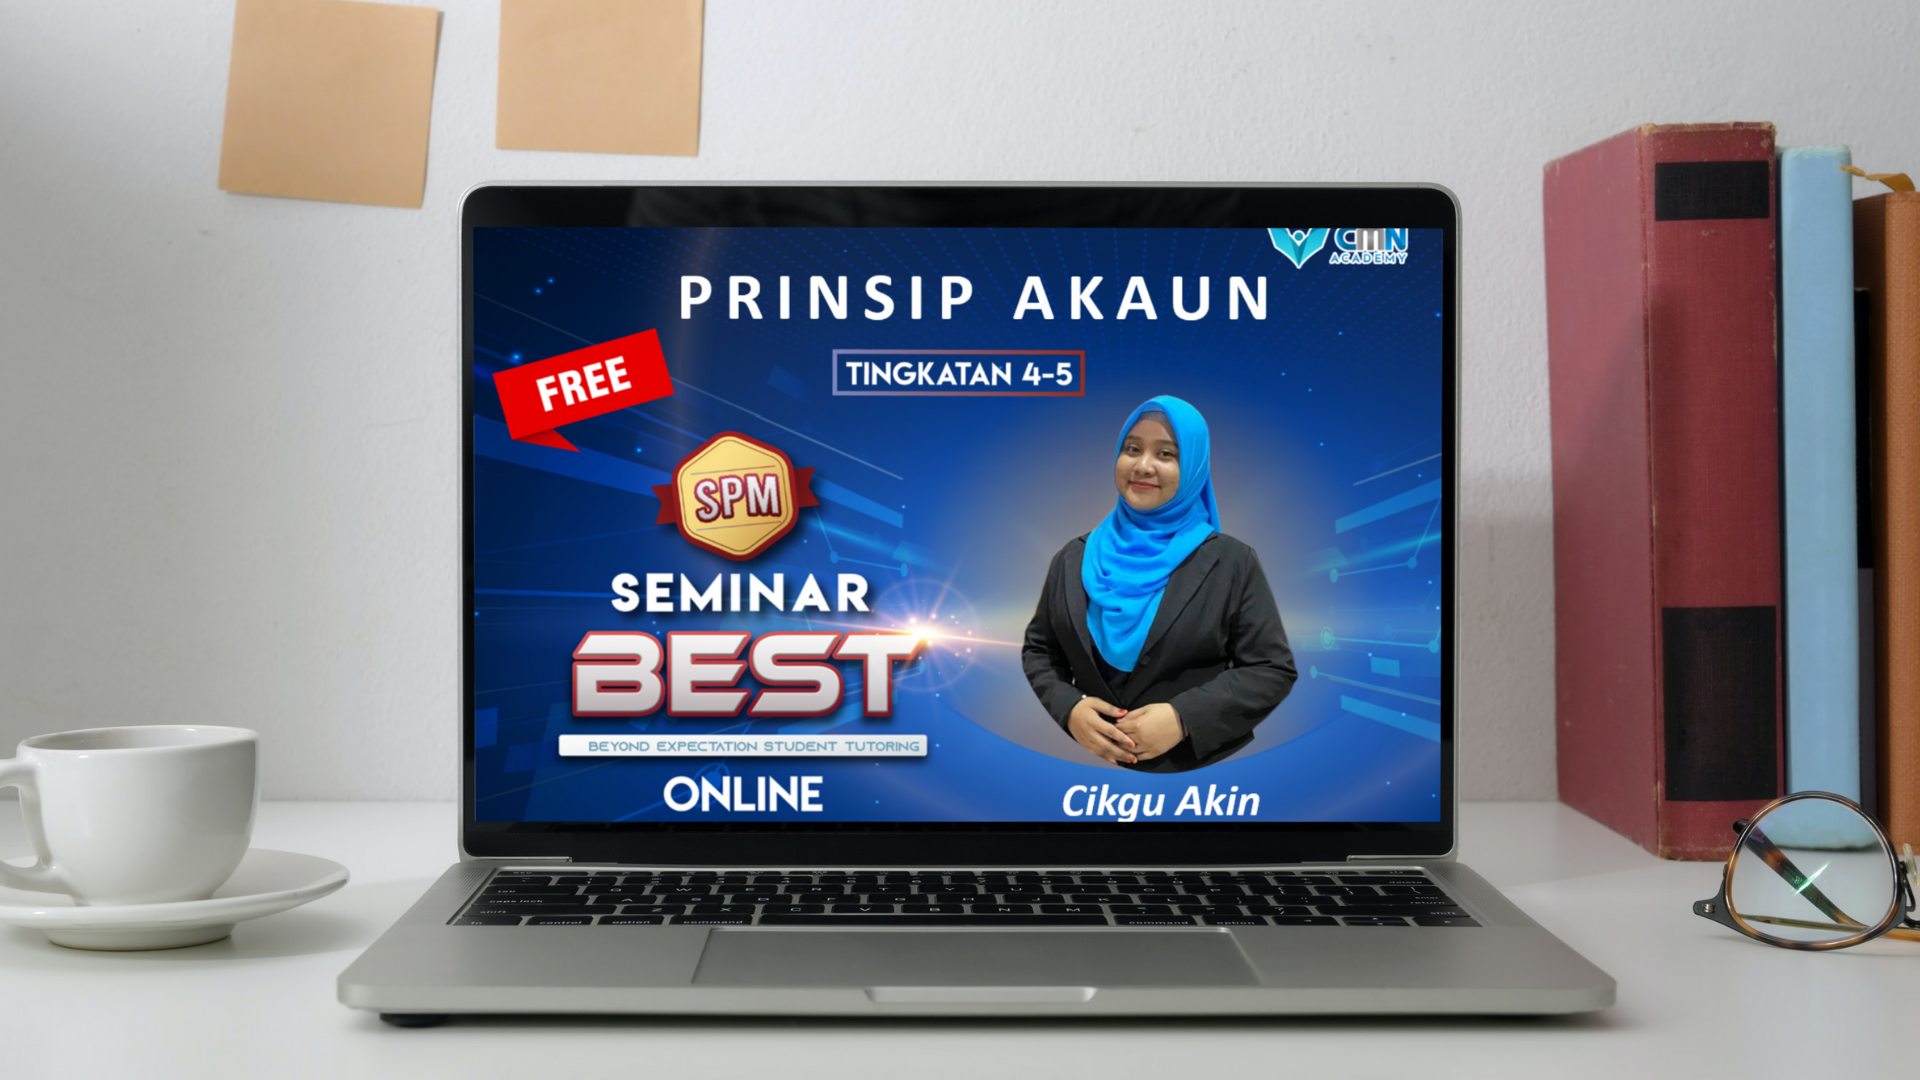 Seminar BEST SPM Prinsip Akaun